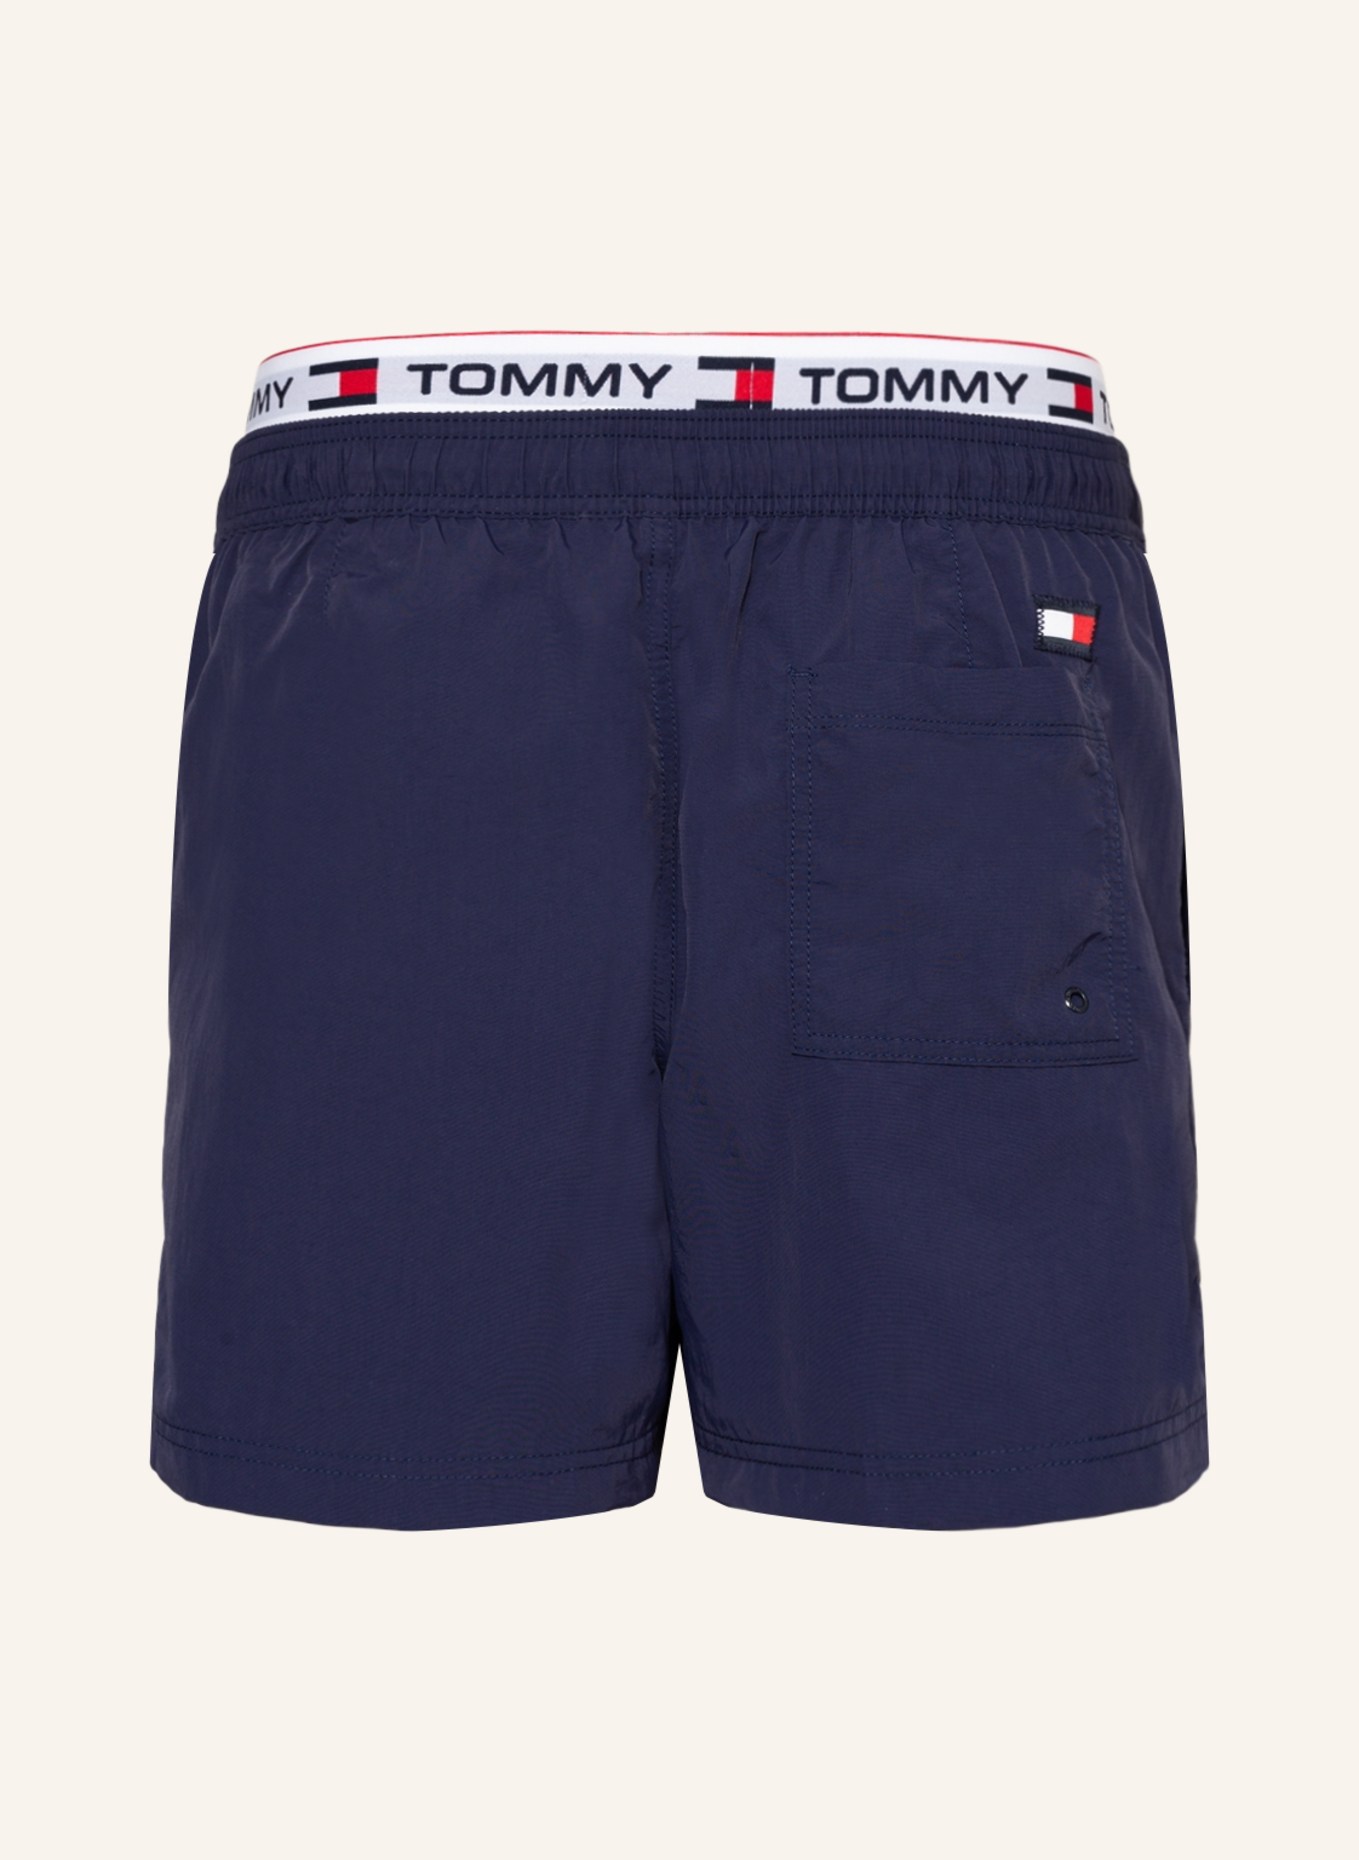 TOMMY HILFIGER Swim shorts, Color: DARK BLUE (Image 2)